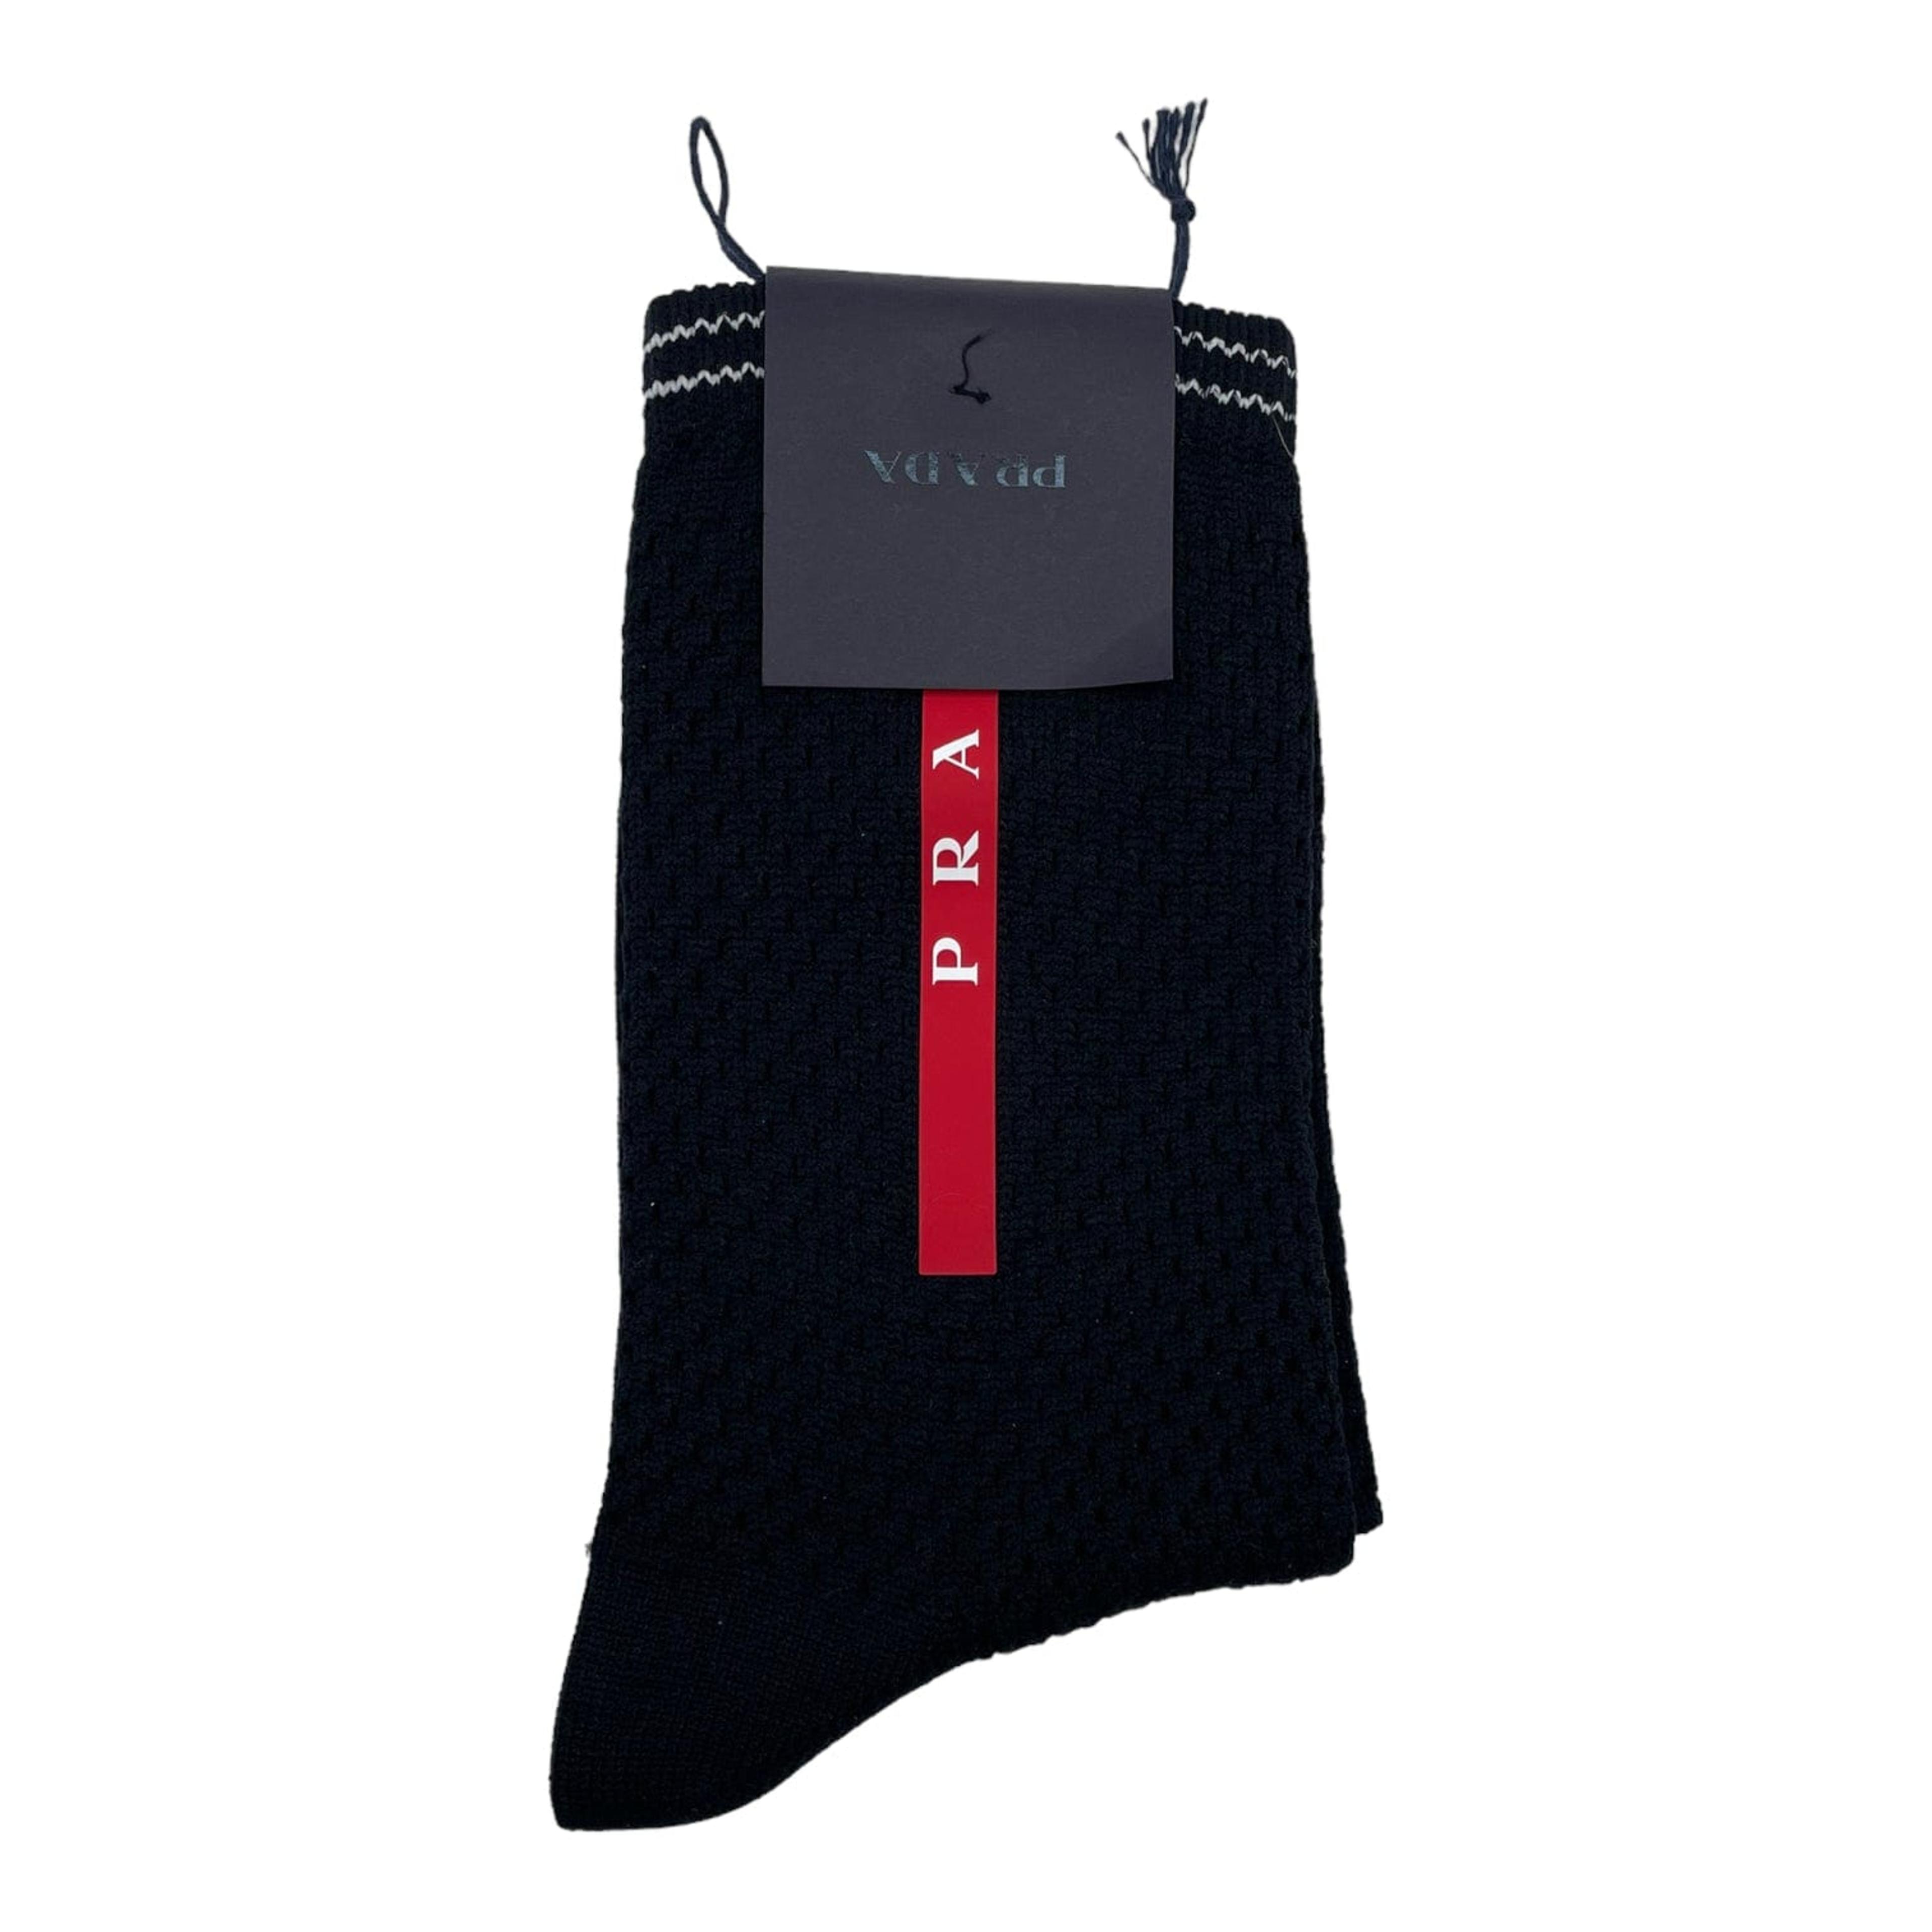 Prada Technical Socks Black